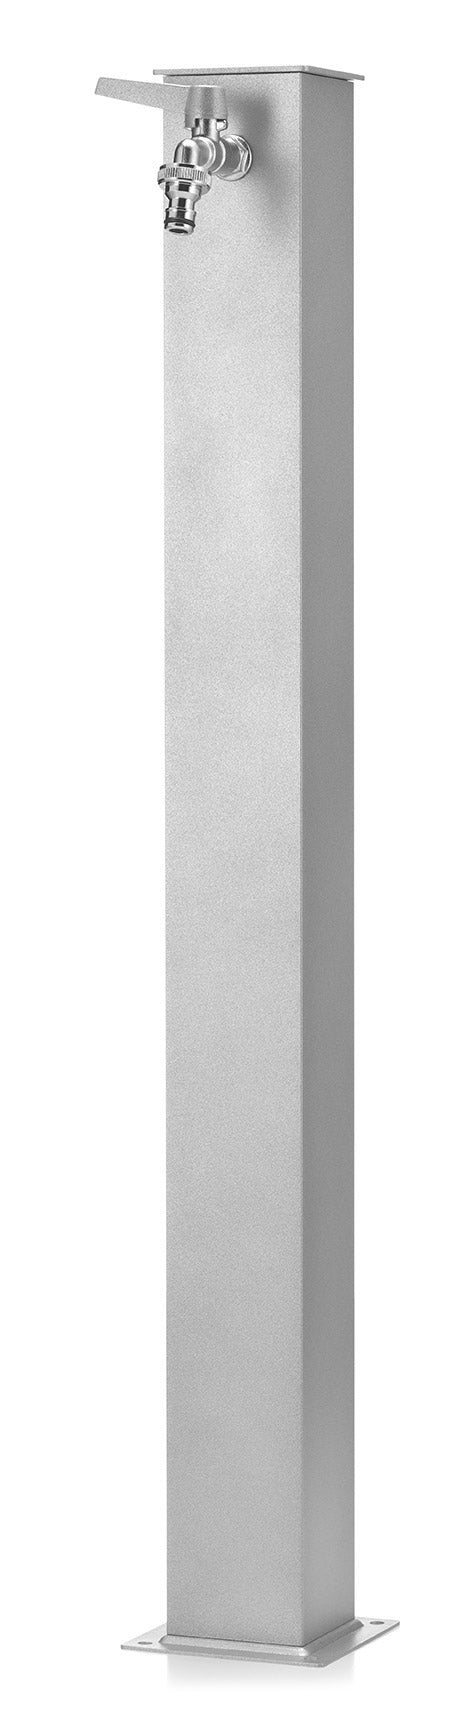 Fontana da Giardino con Rubinetto Belfer 42/Q Alluminio-3